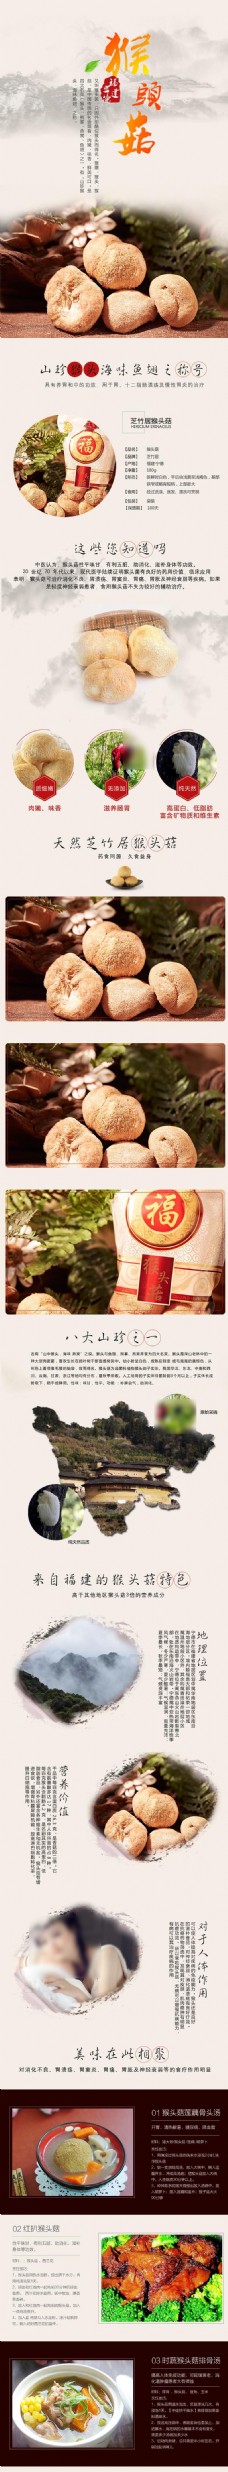 淘宝商城猴头菇商品详情页图片